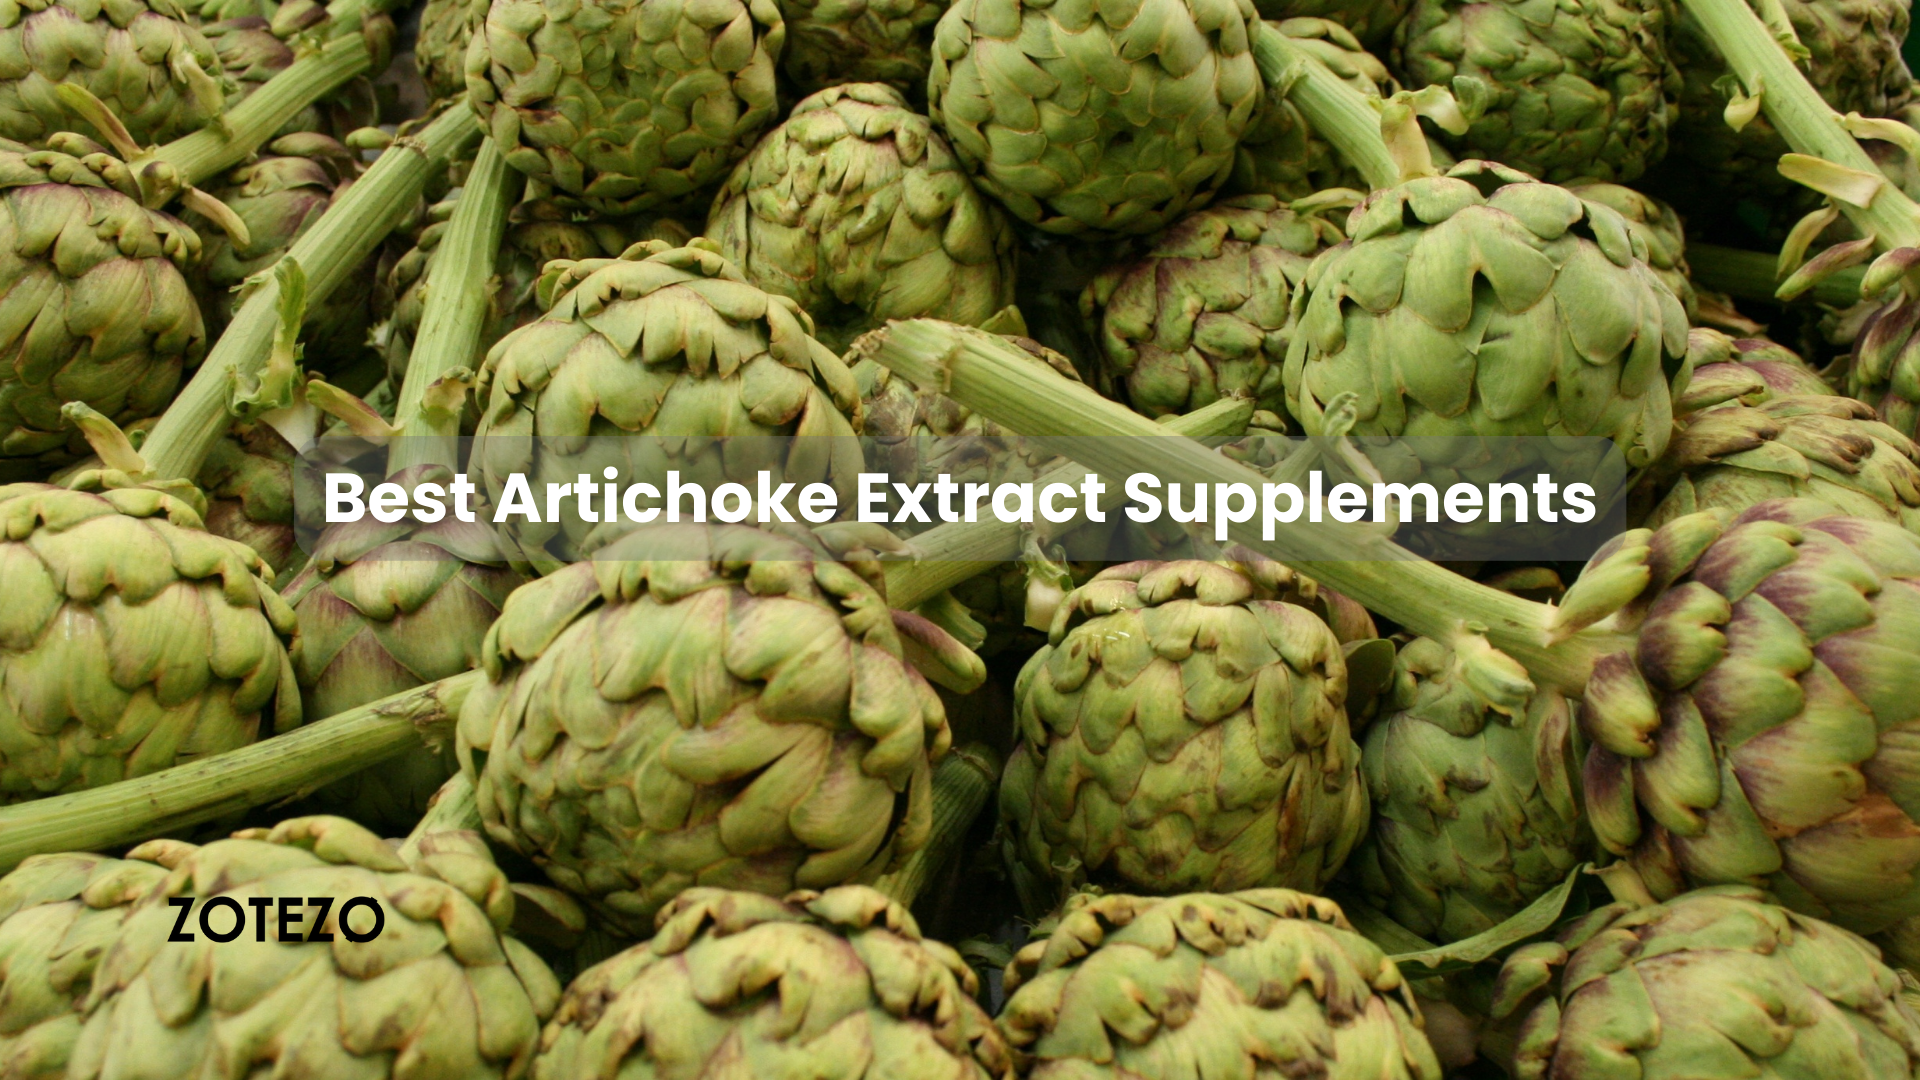 Artichoke Extract Supplements in UK